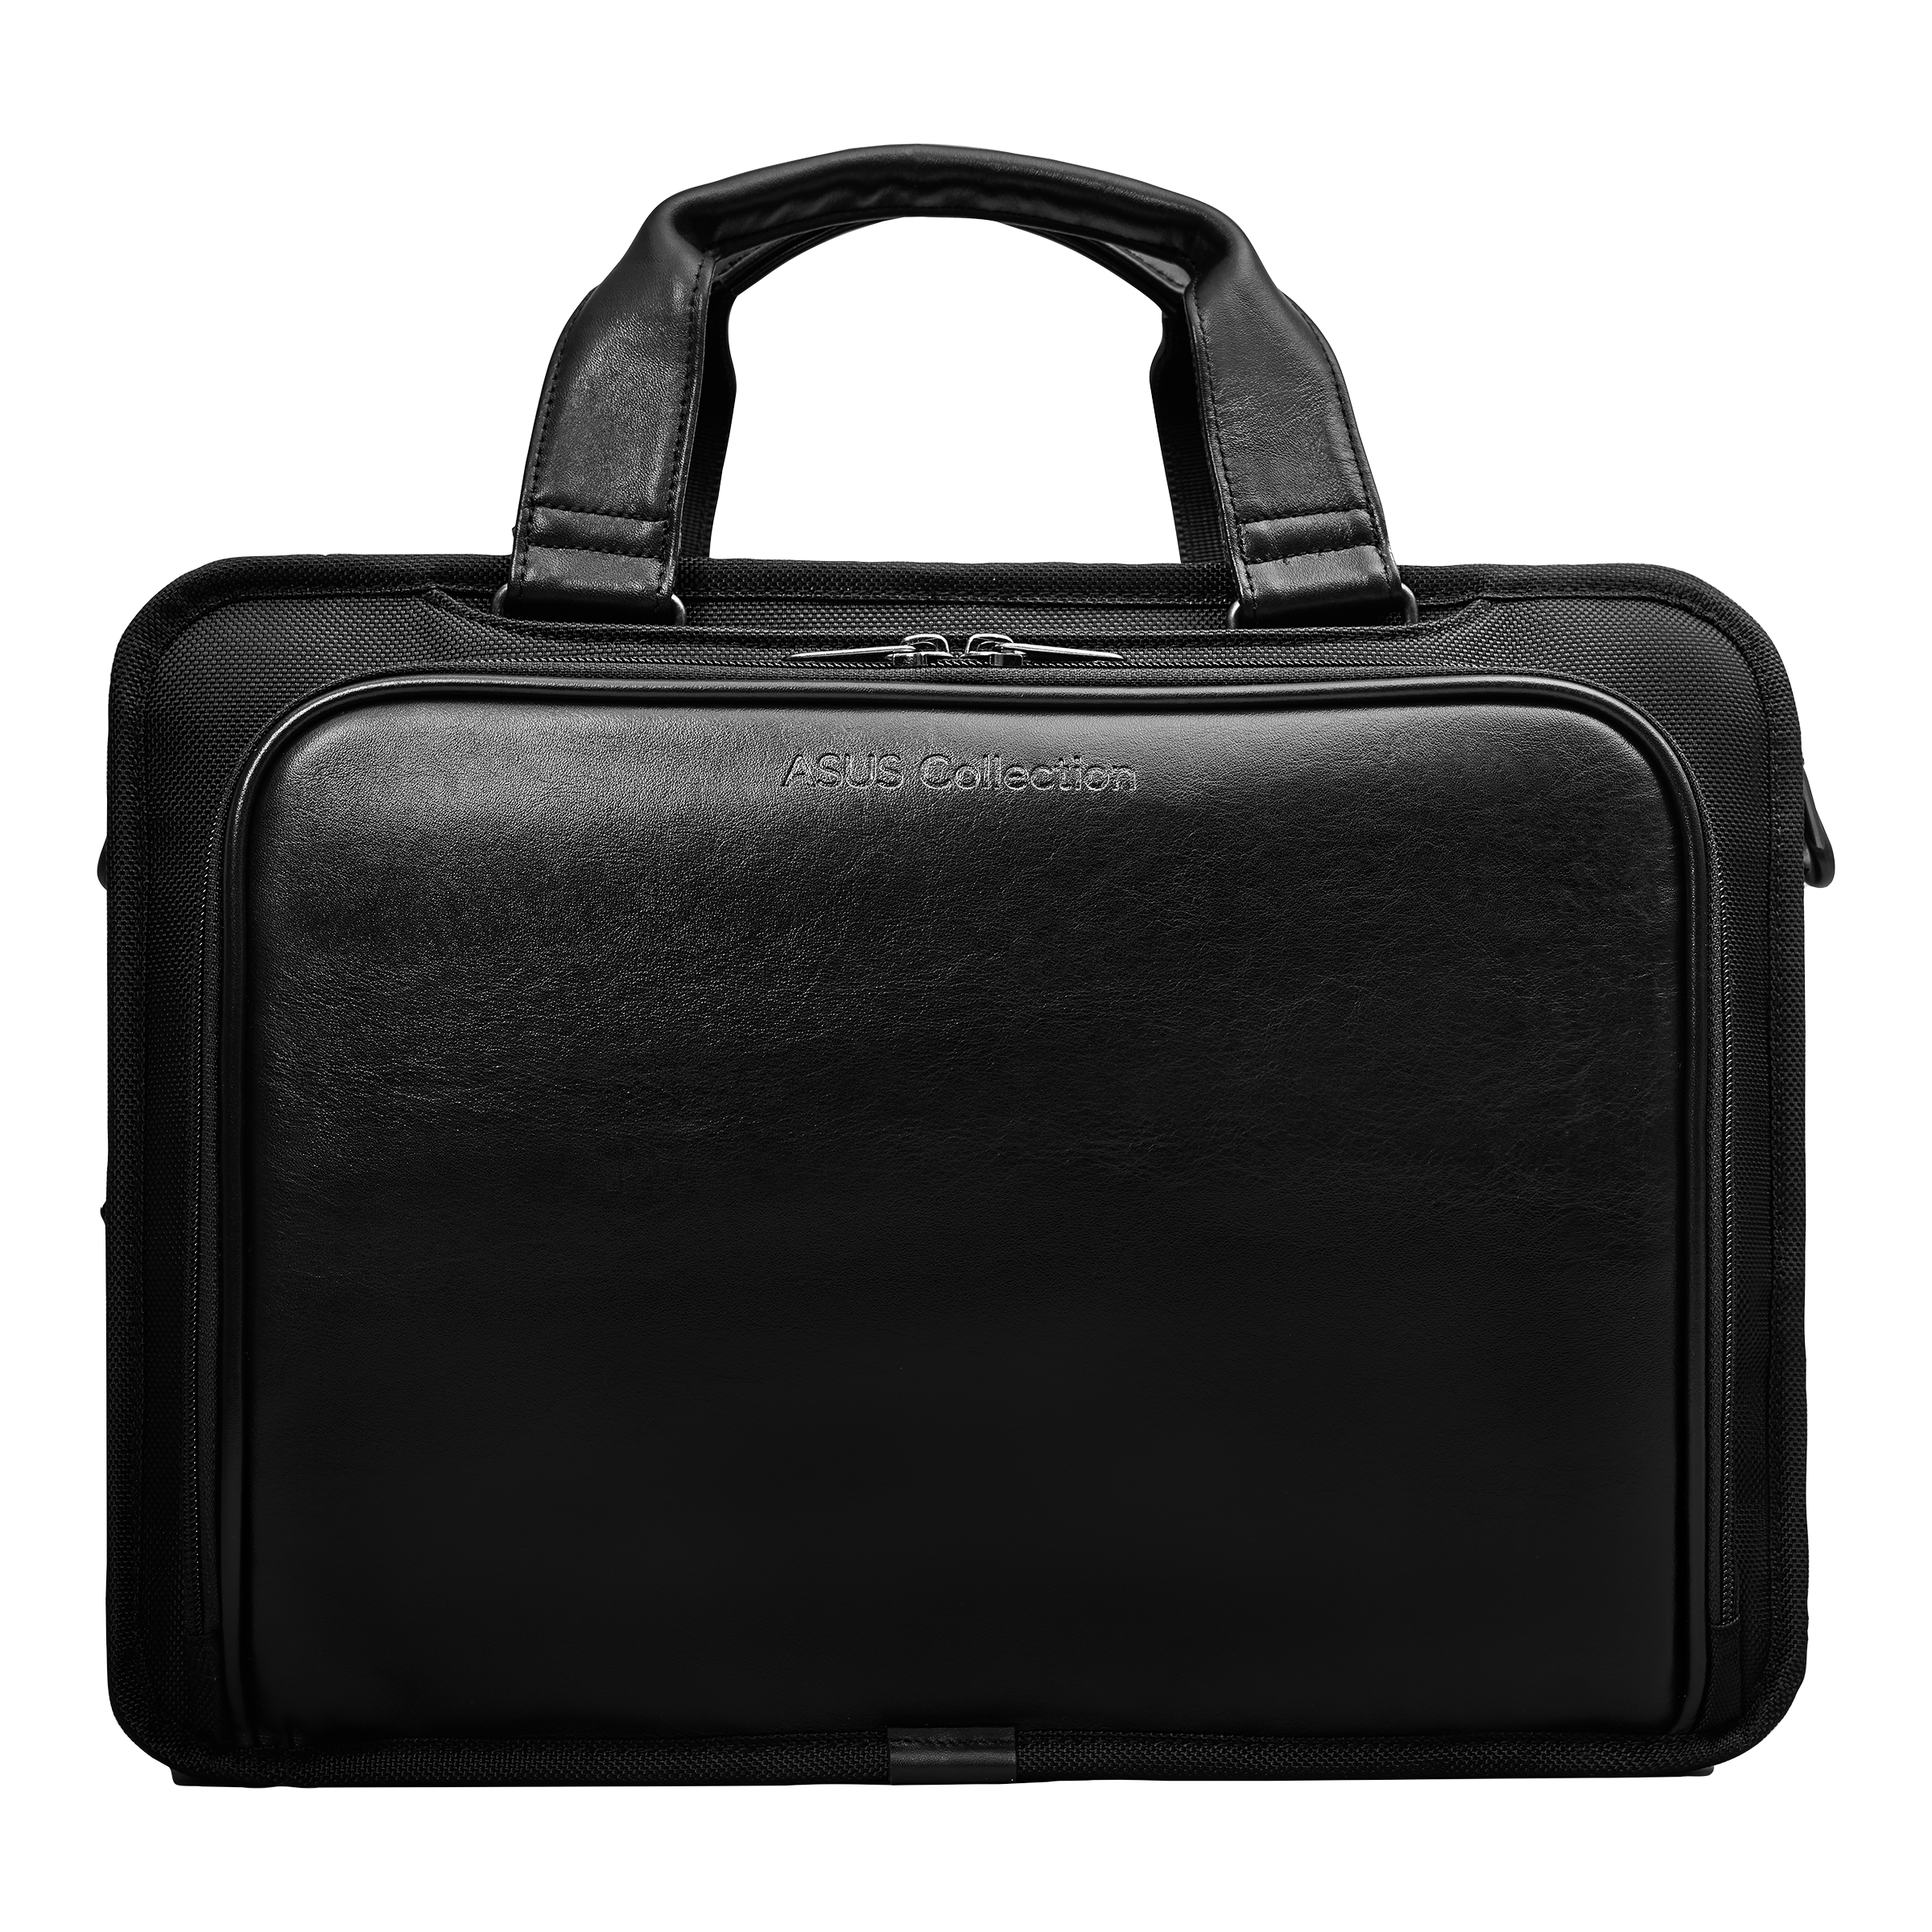 ASUS Vantage Briefcase 15.6